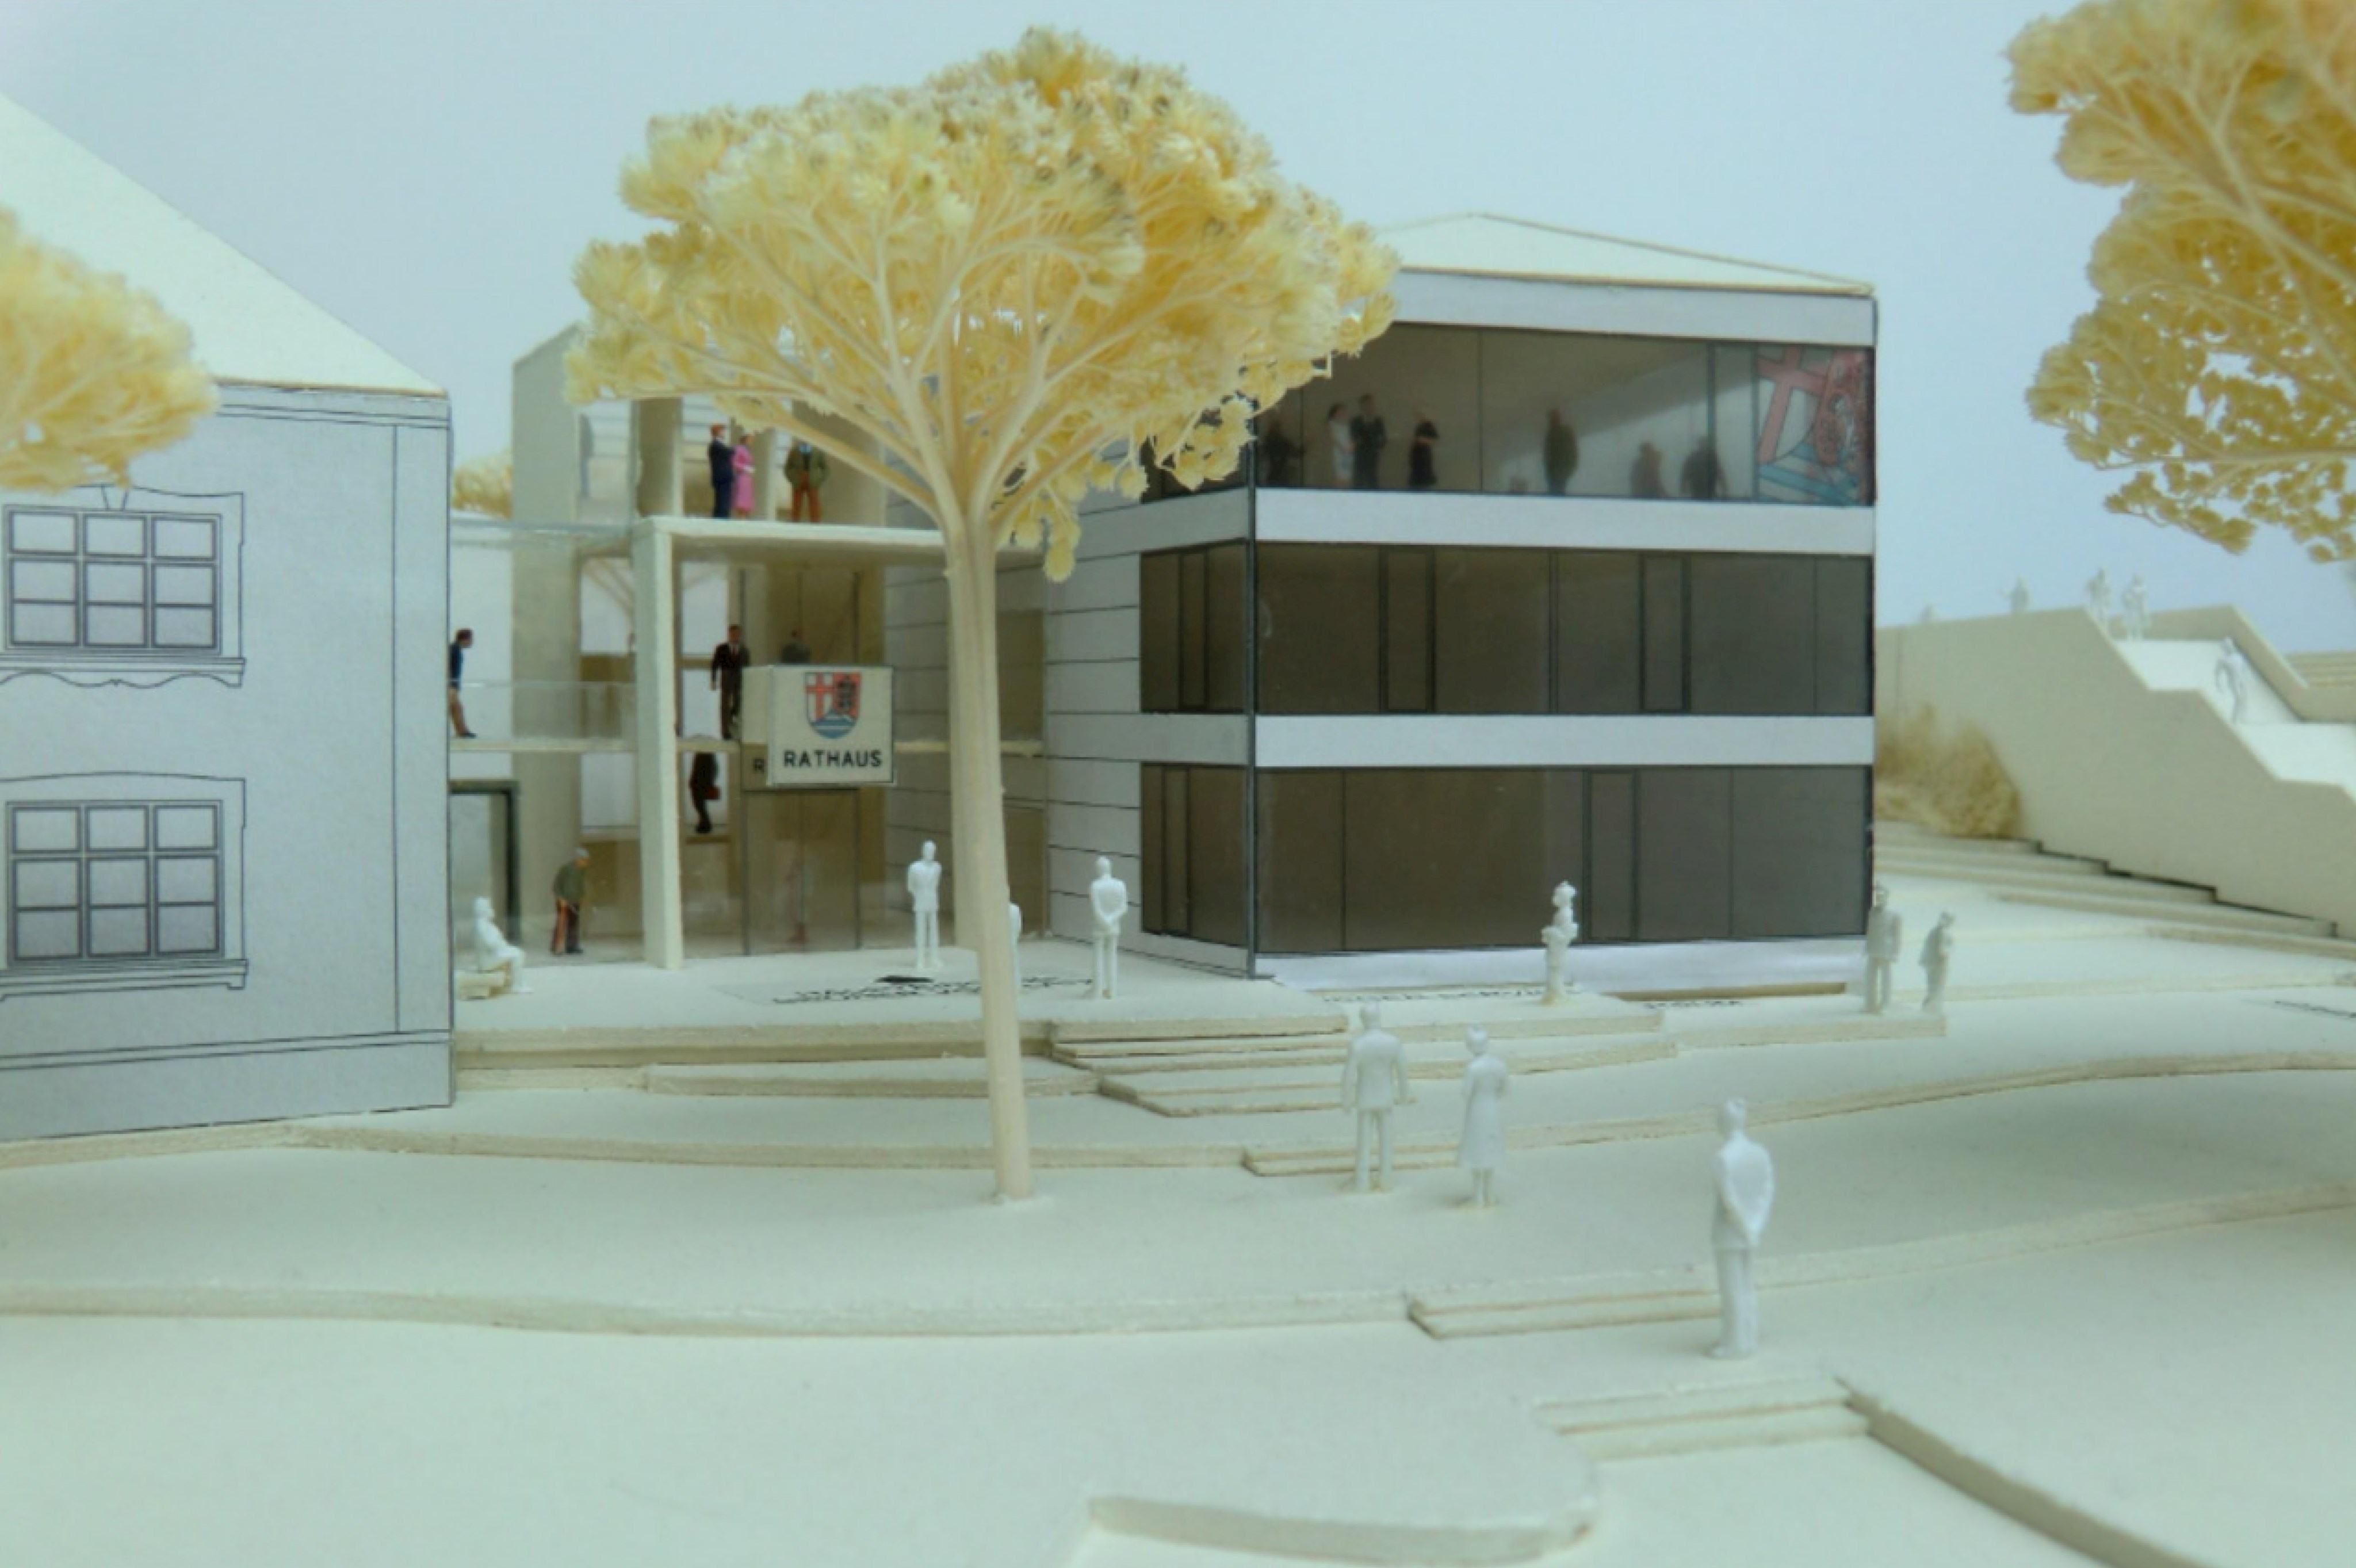 Modelldarstellung
Architekturbüro Blasch